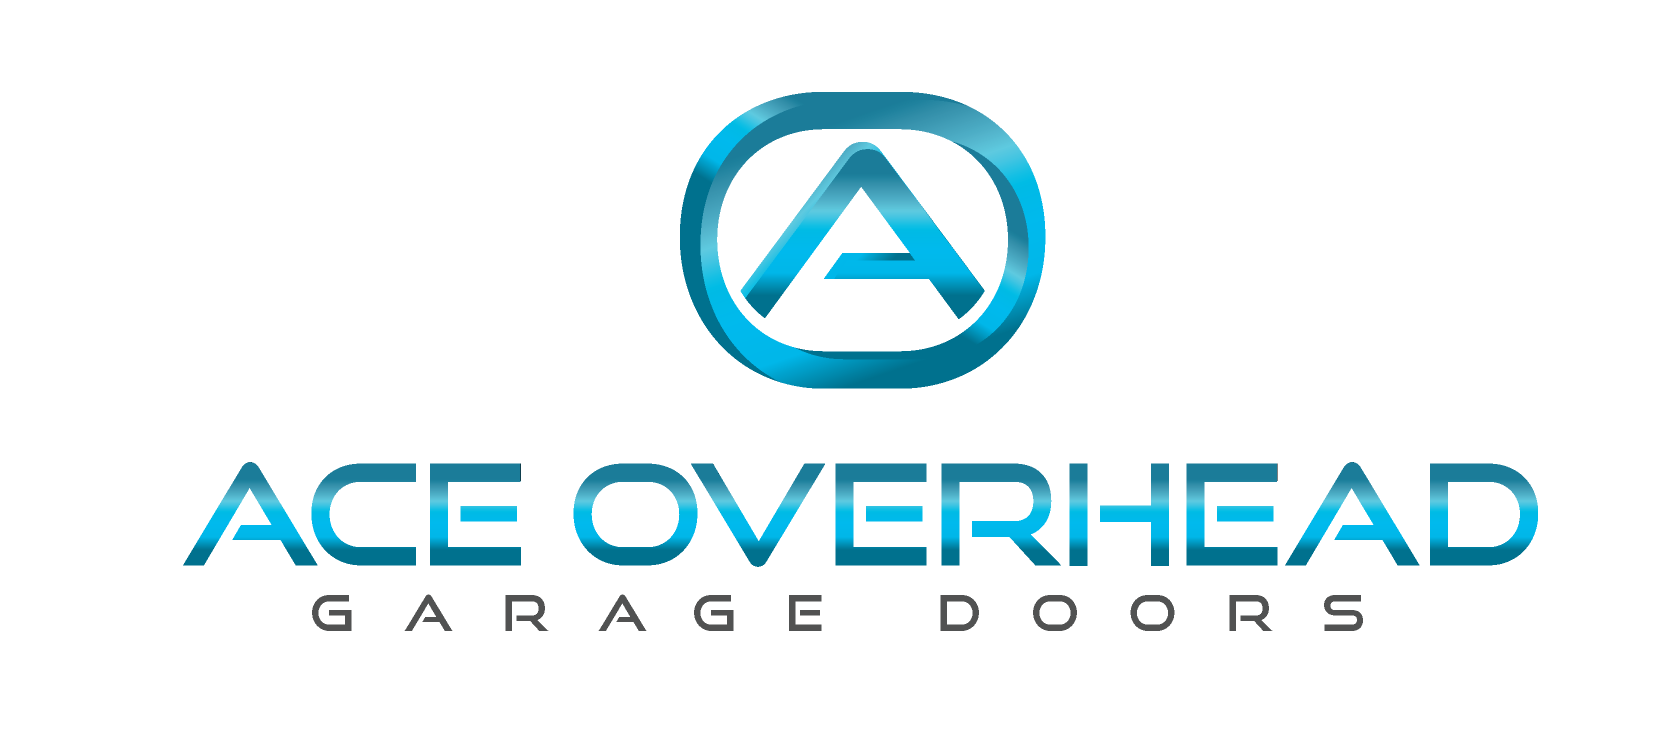 Ace Overhead Garage Doors Logo